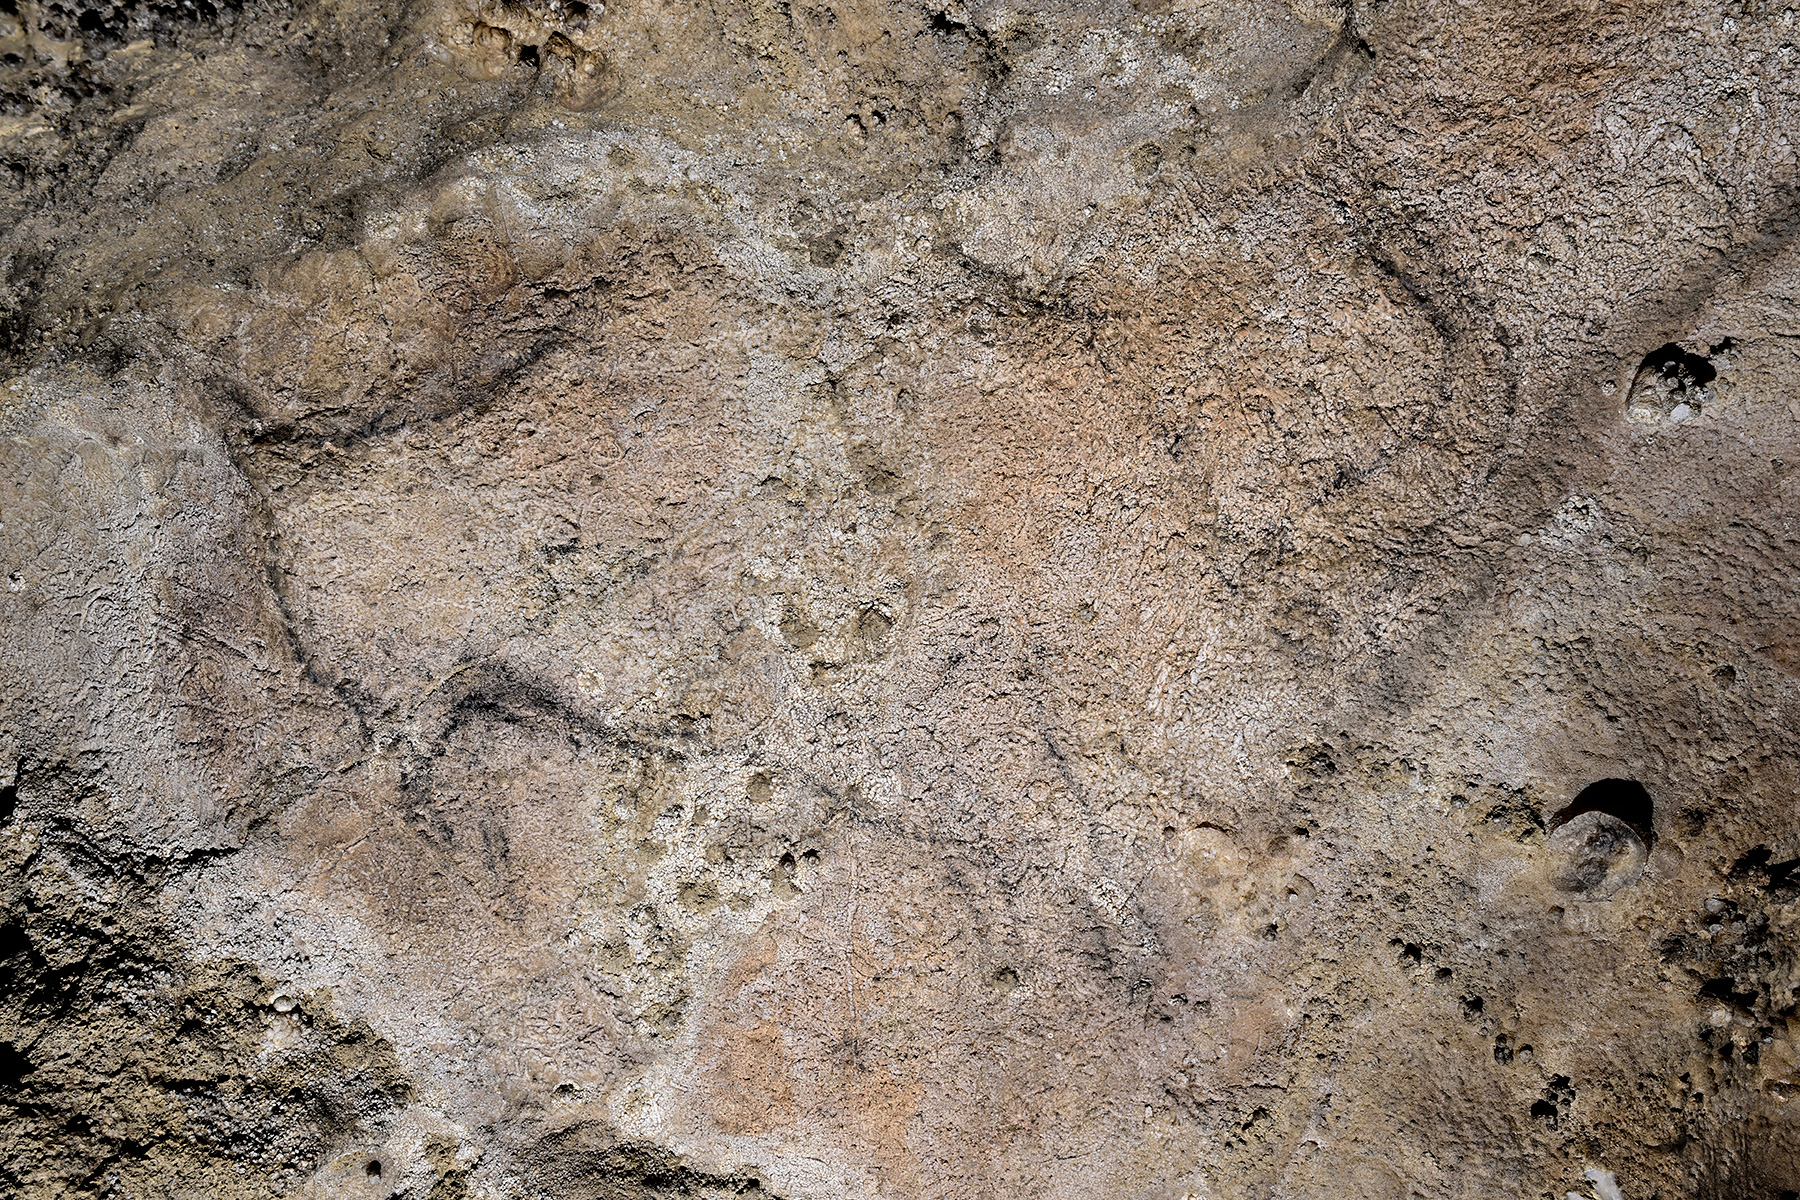 Grotte préhistorique de Bédeilhac (Ariège) - Peinture rupestre d'un bison dans une niche de la salle finale